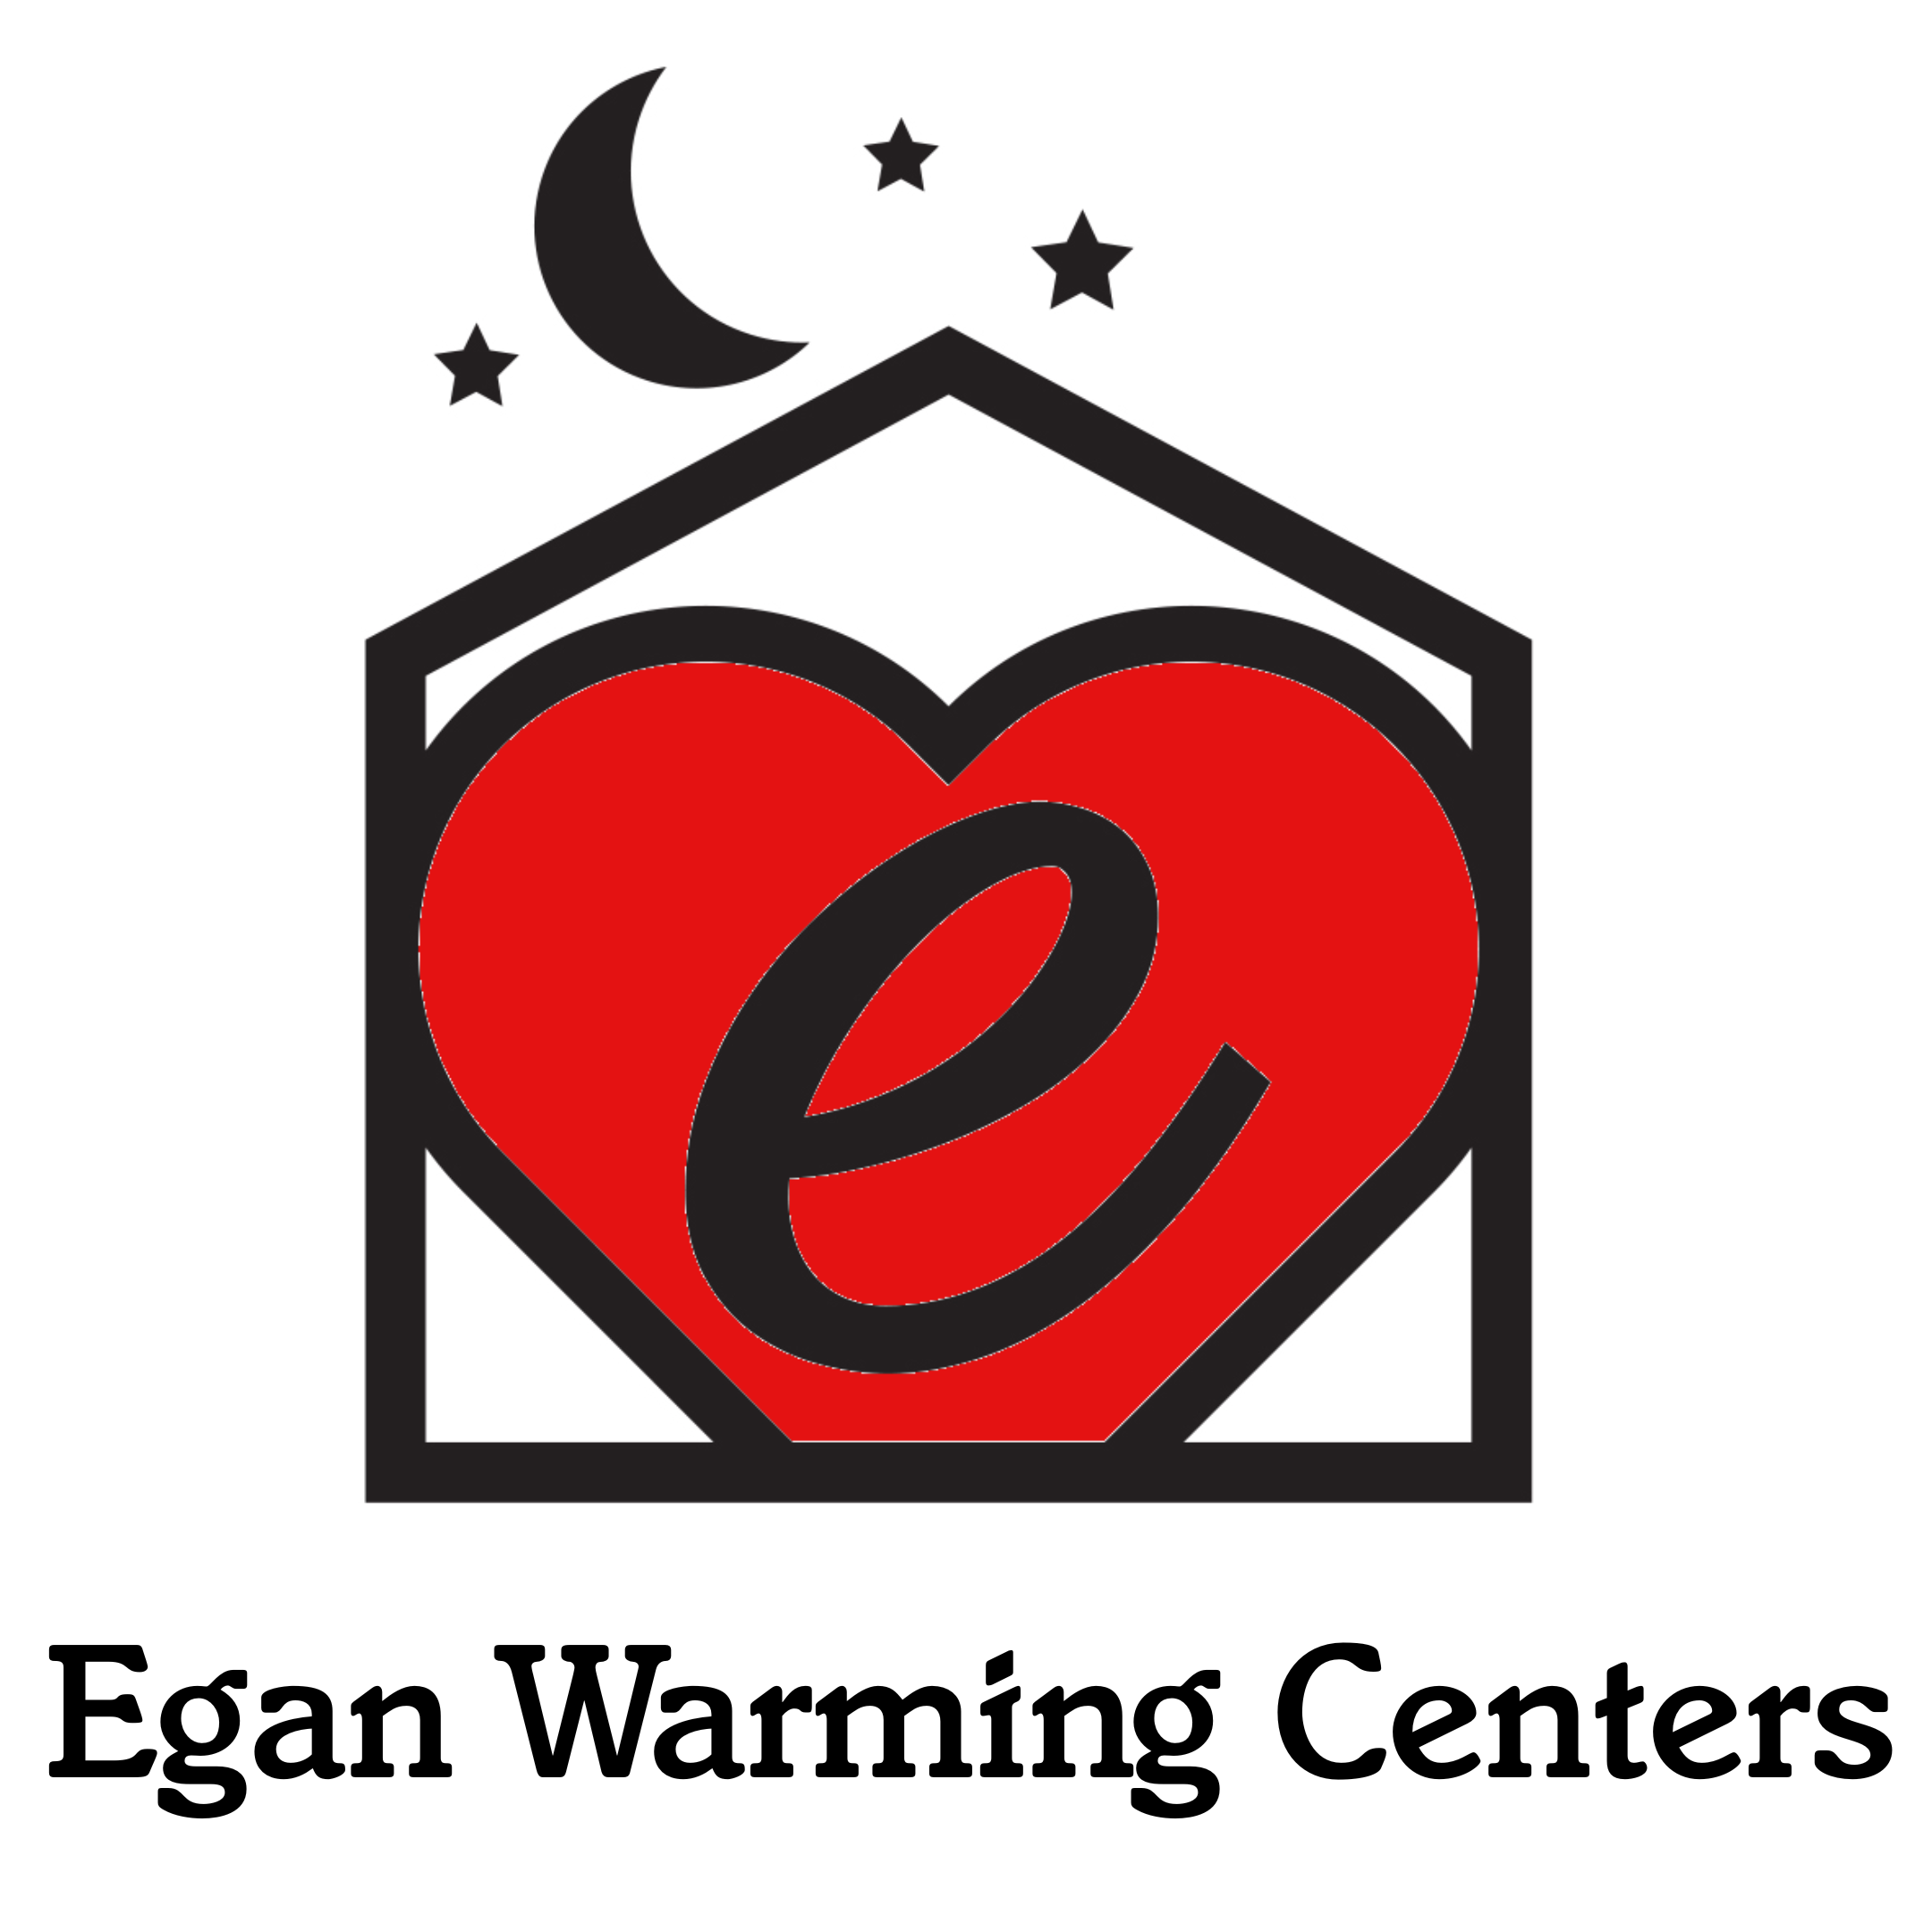 Egan Warming Center